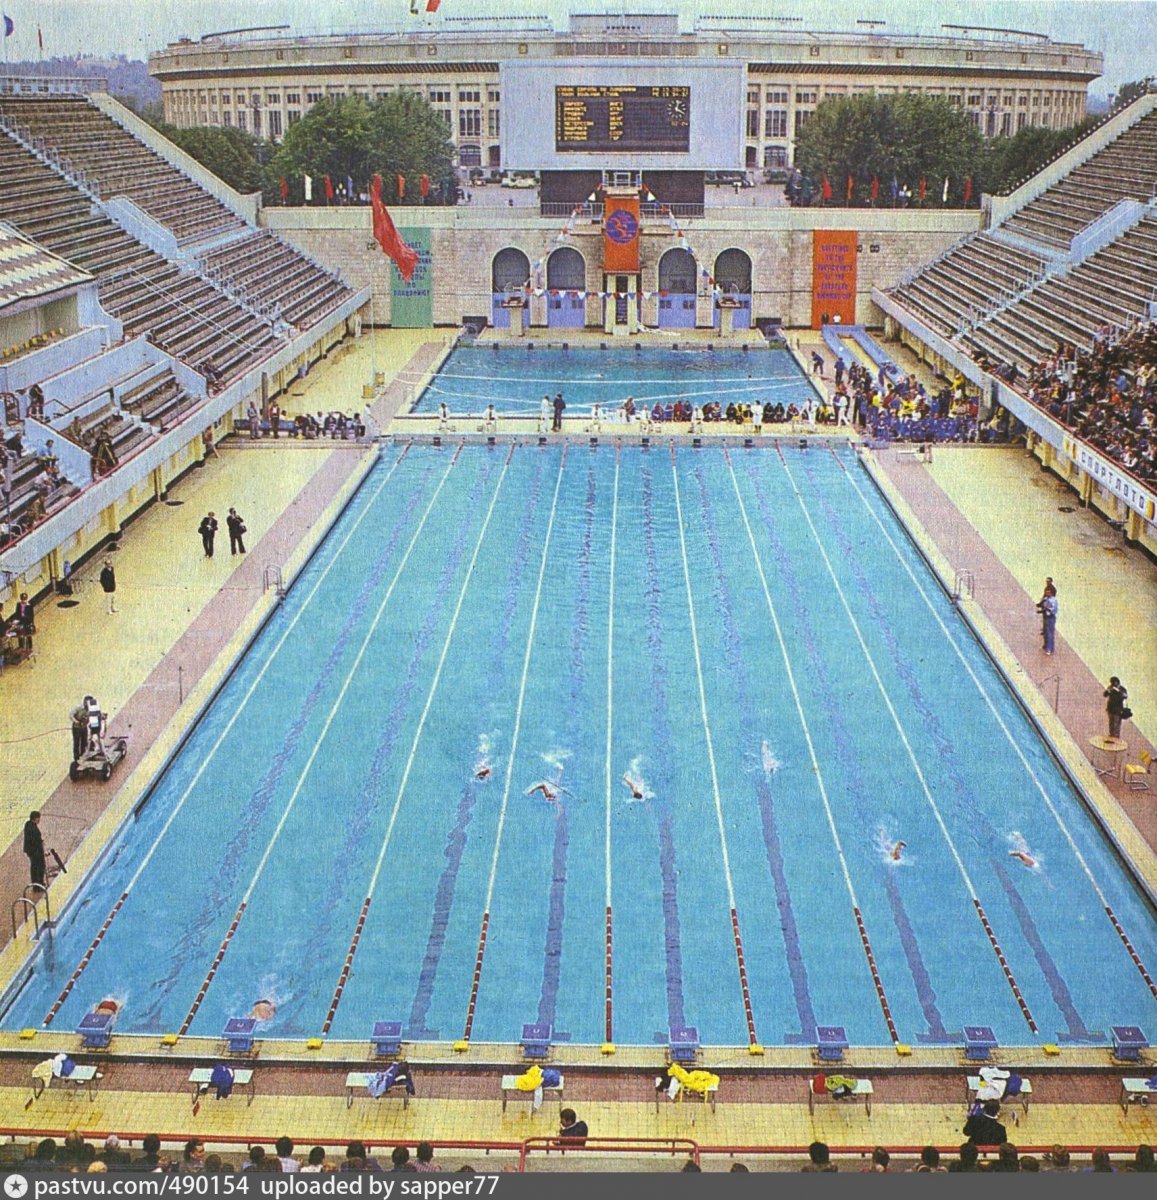 Плавательный бассейн центрального стадиона им. Ленина